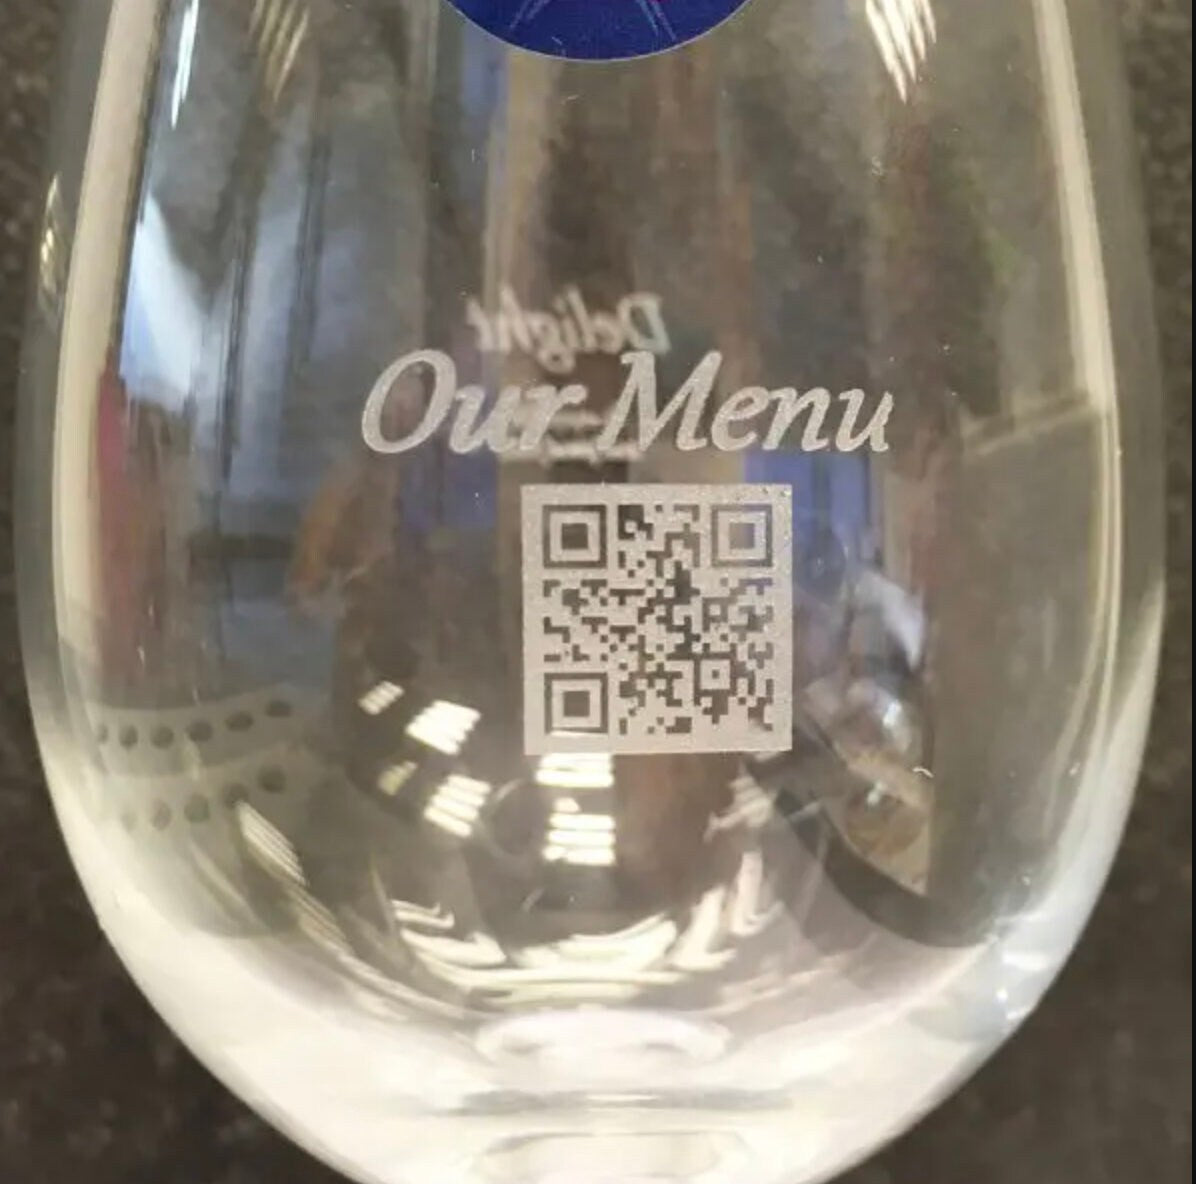 Bicchieri da vino rosso personalizzati con incisione laser nomi, loghi invia il tuo design regalo / bar / ristoranti / hotel /bnb